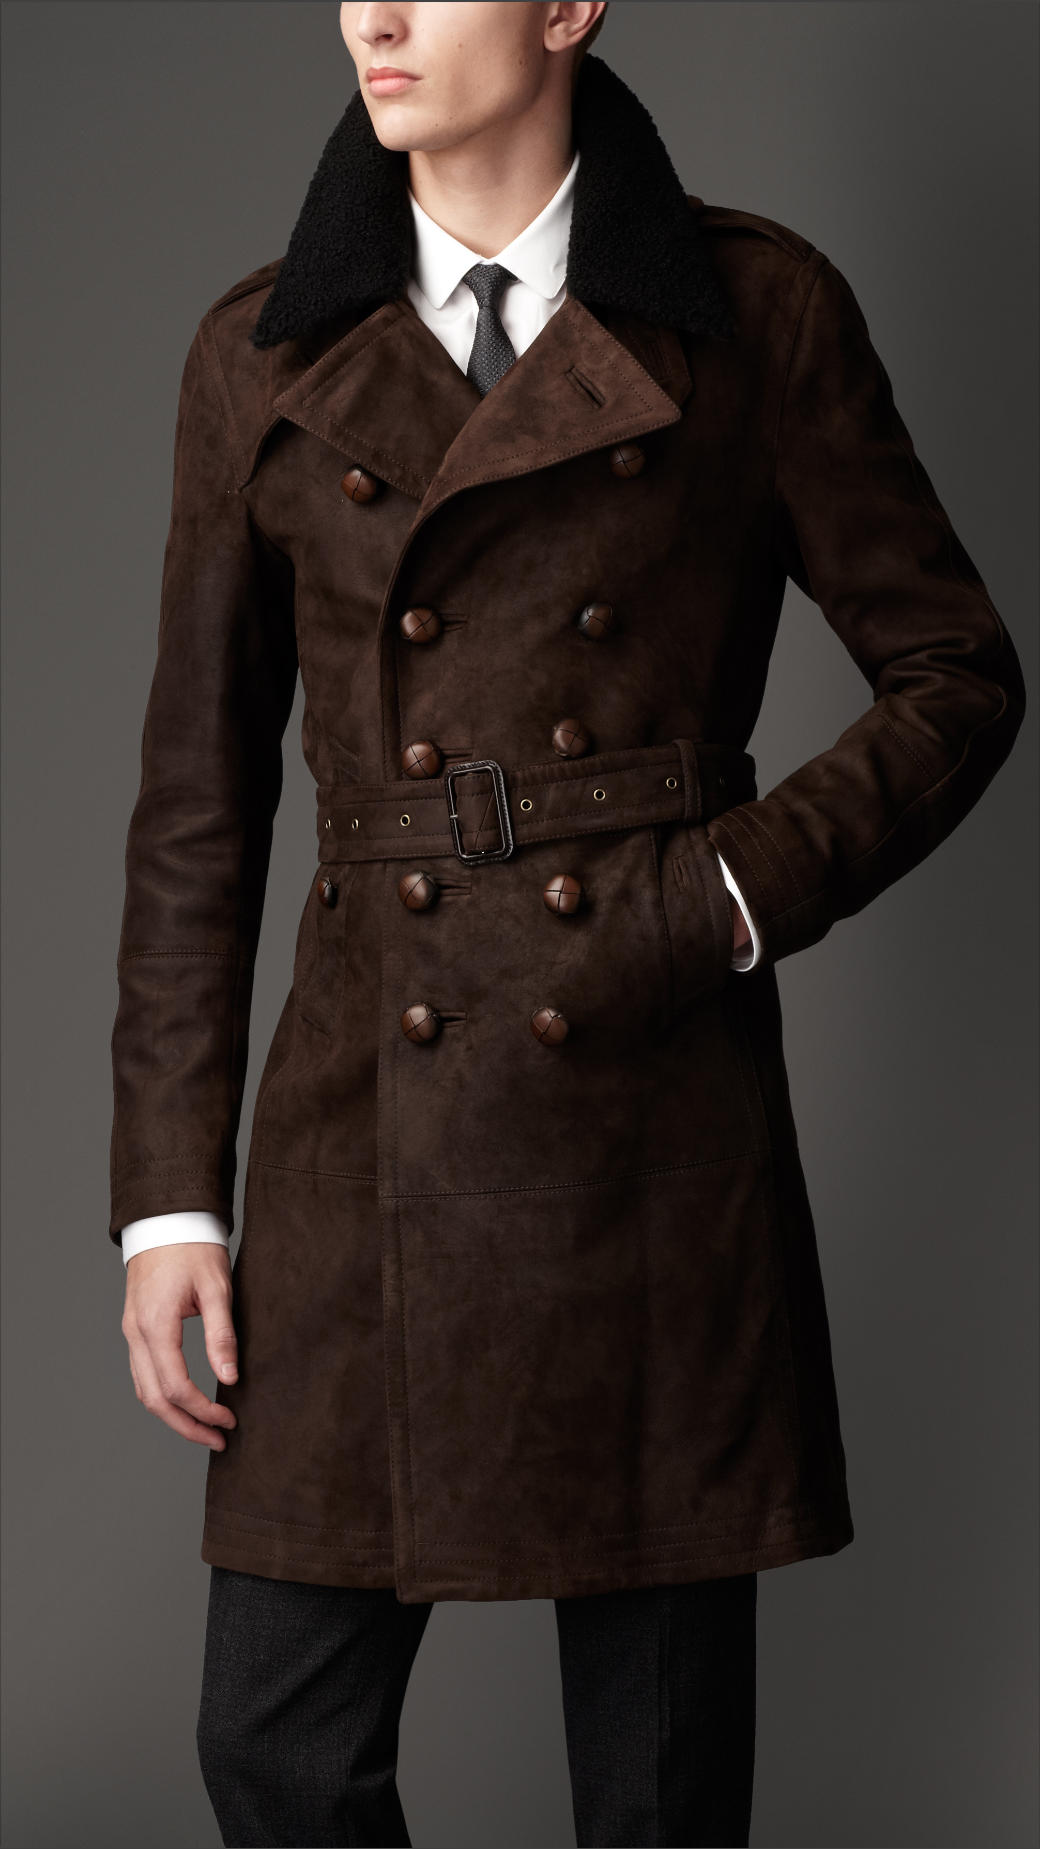 Men's brown coat photo